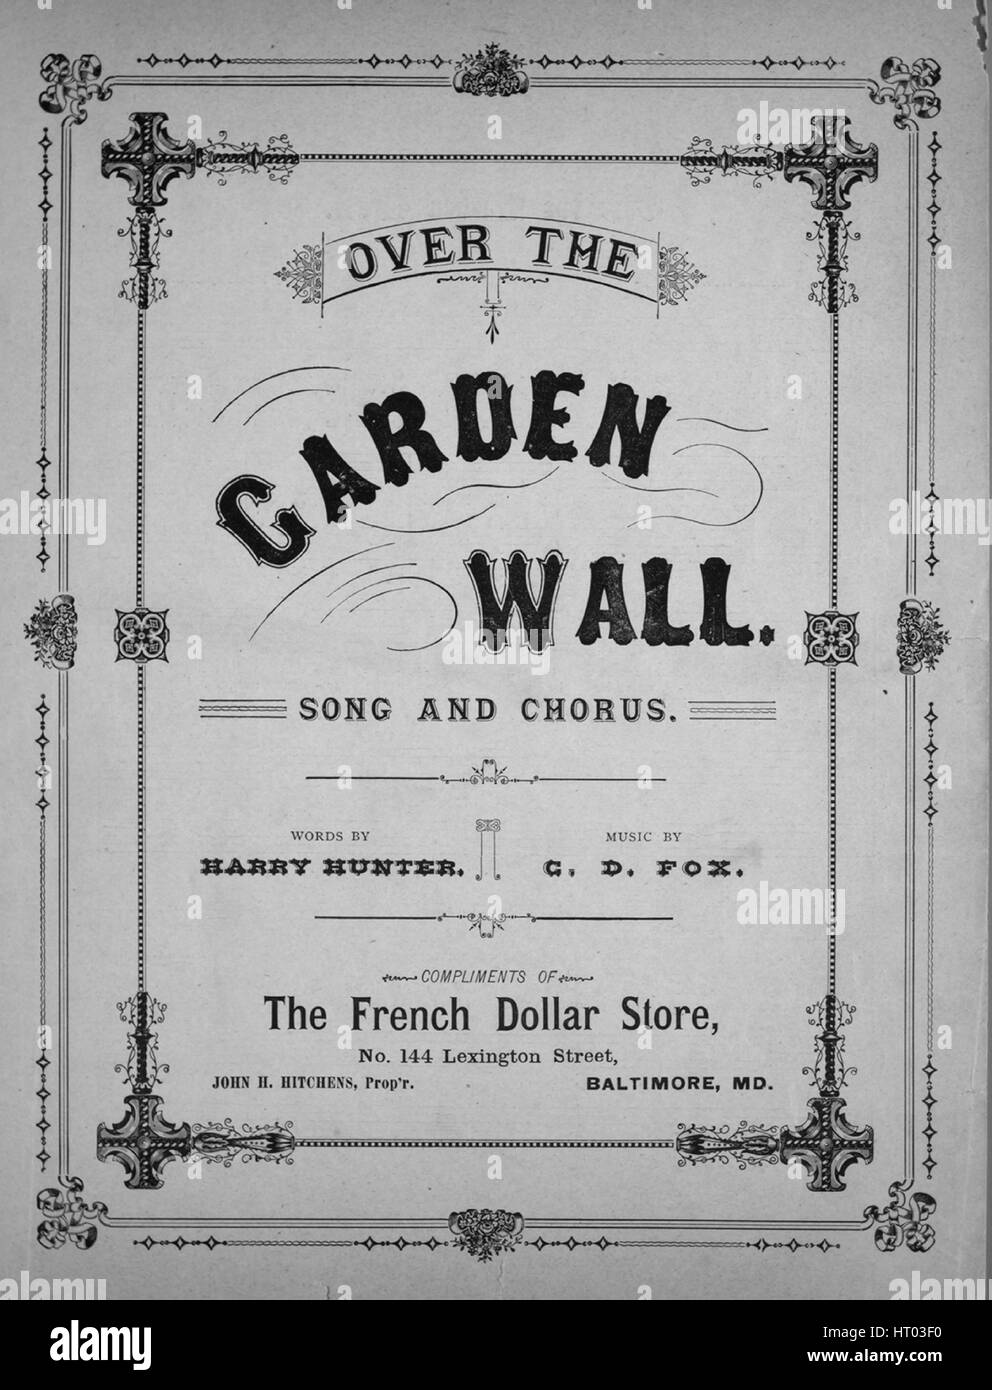 over the garden wall sheet music